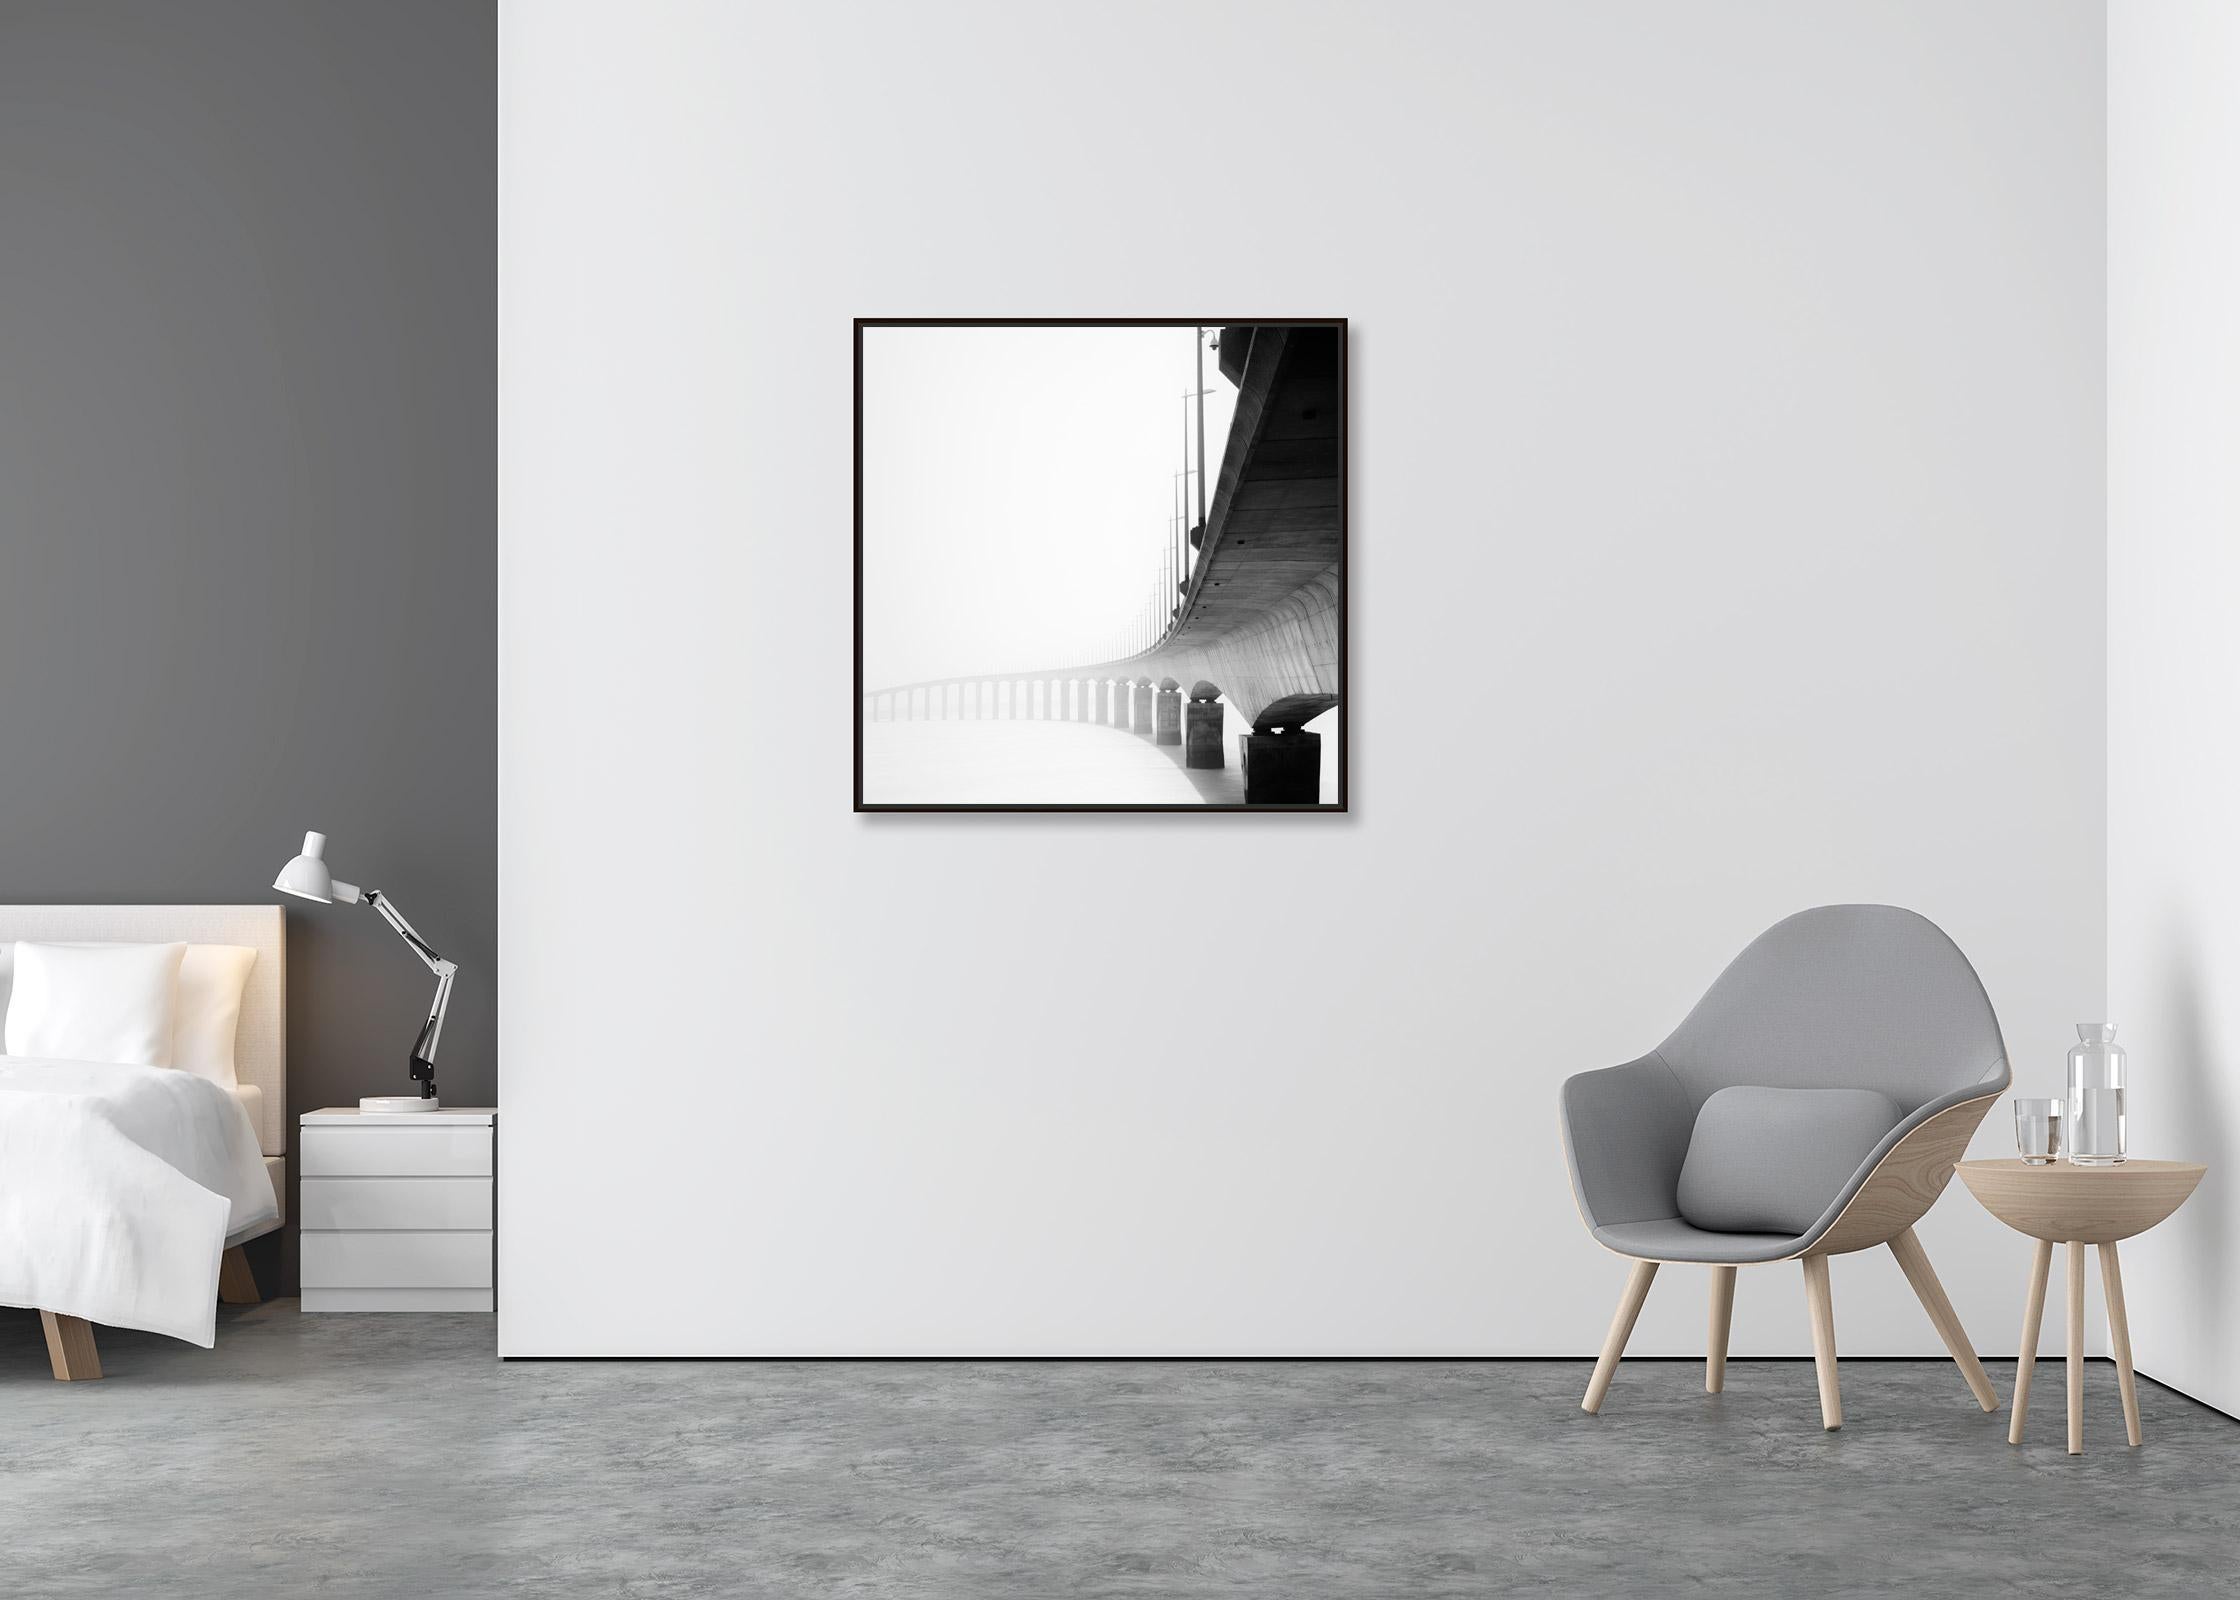 le de Re Bridge, architectural detail, France, black white landscape photography - Contemporary Photograph by Gerald Berghammer